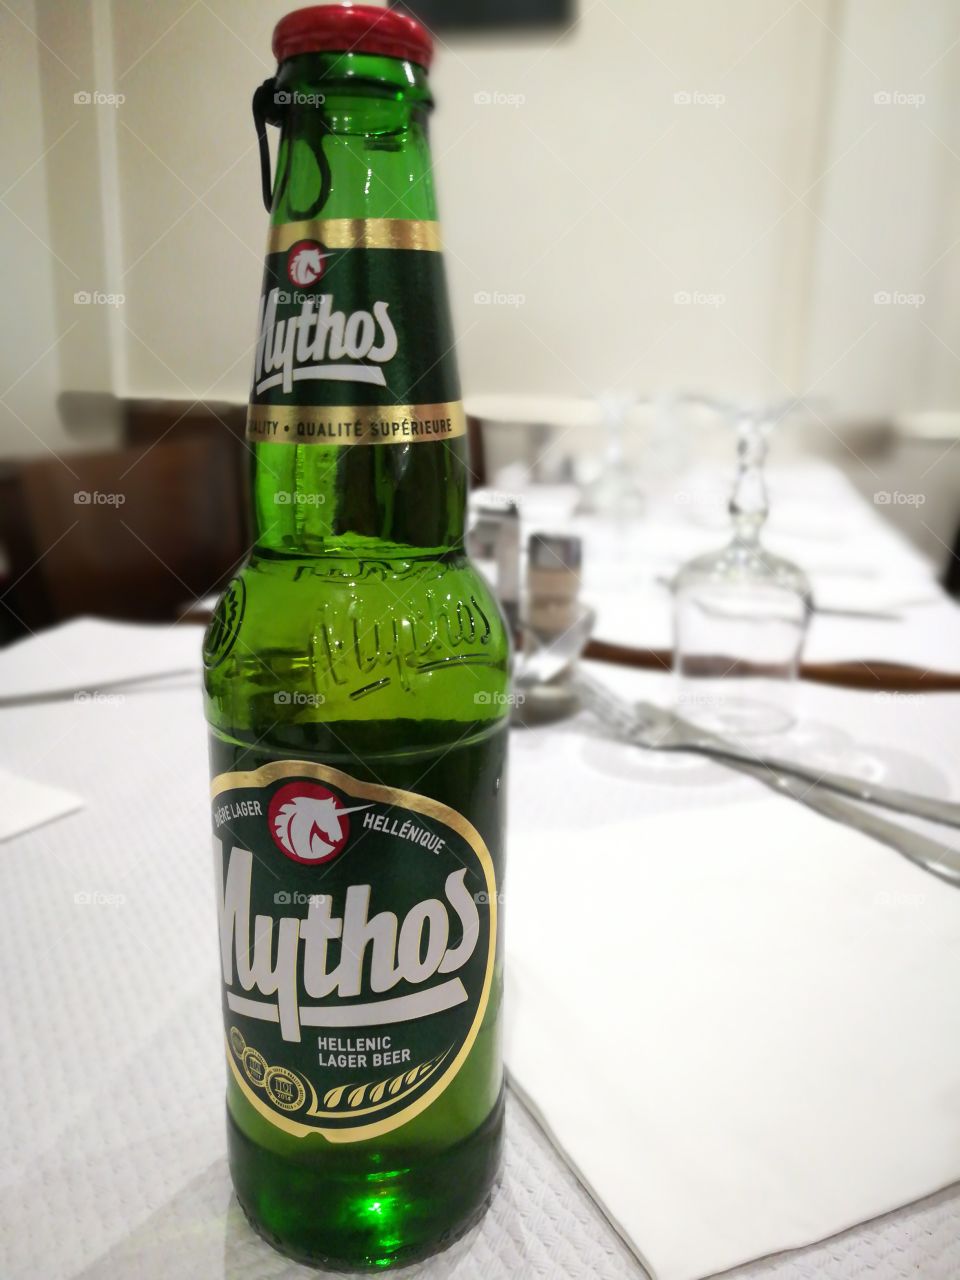 It's not Heineken, but a greek beer named Mythos.